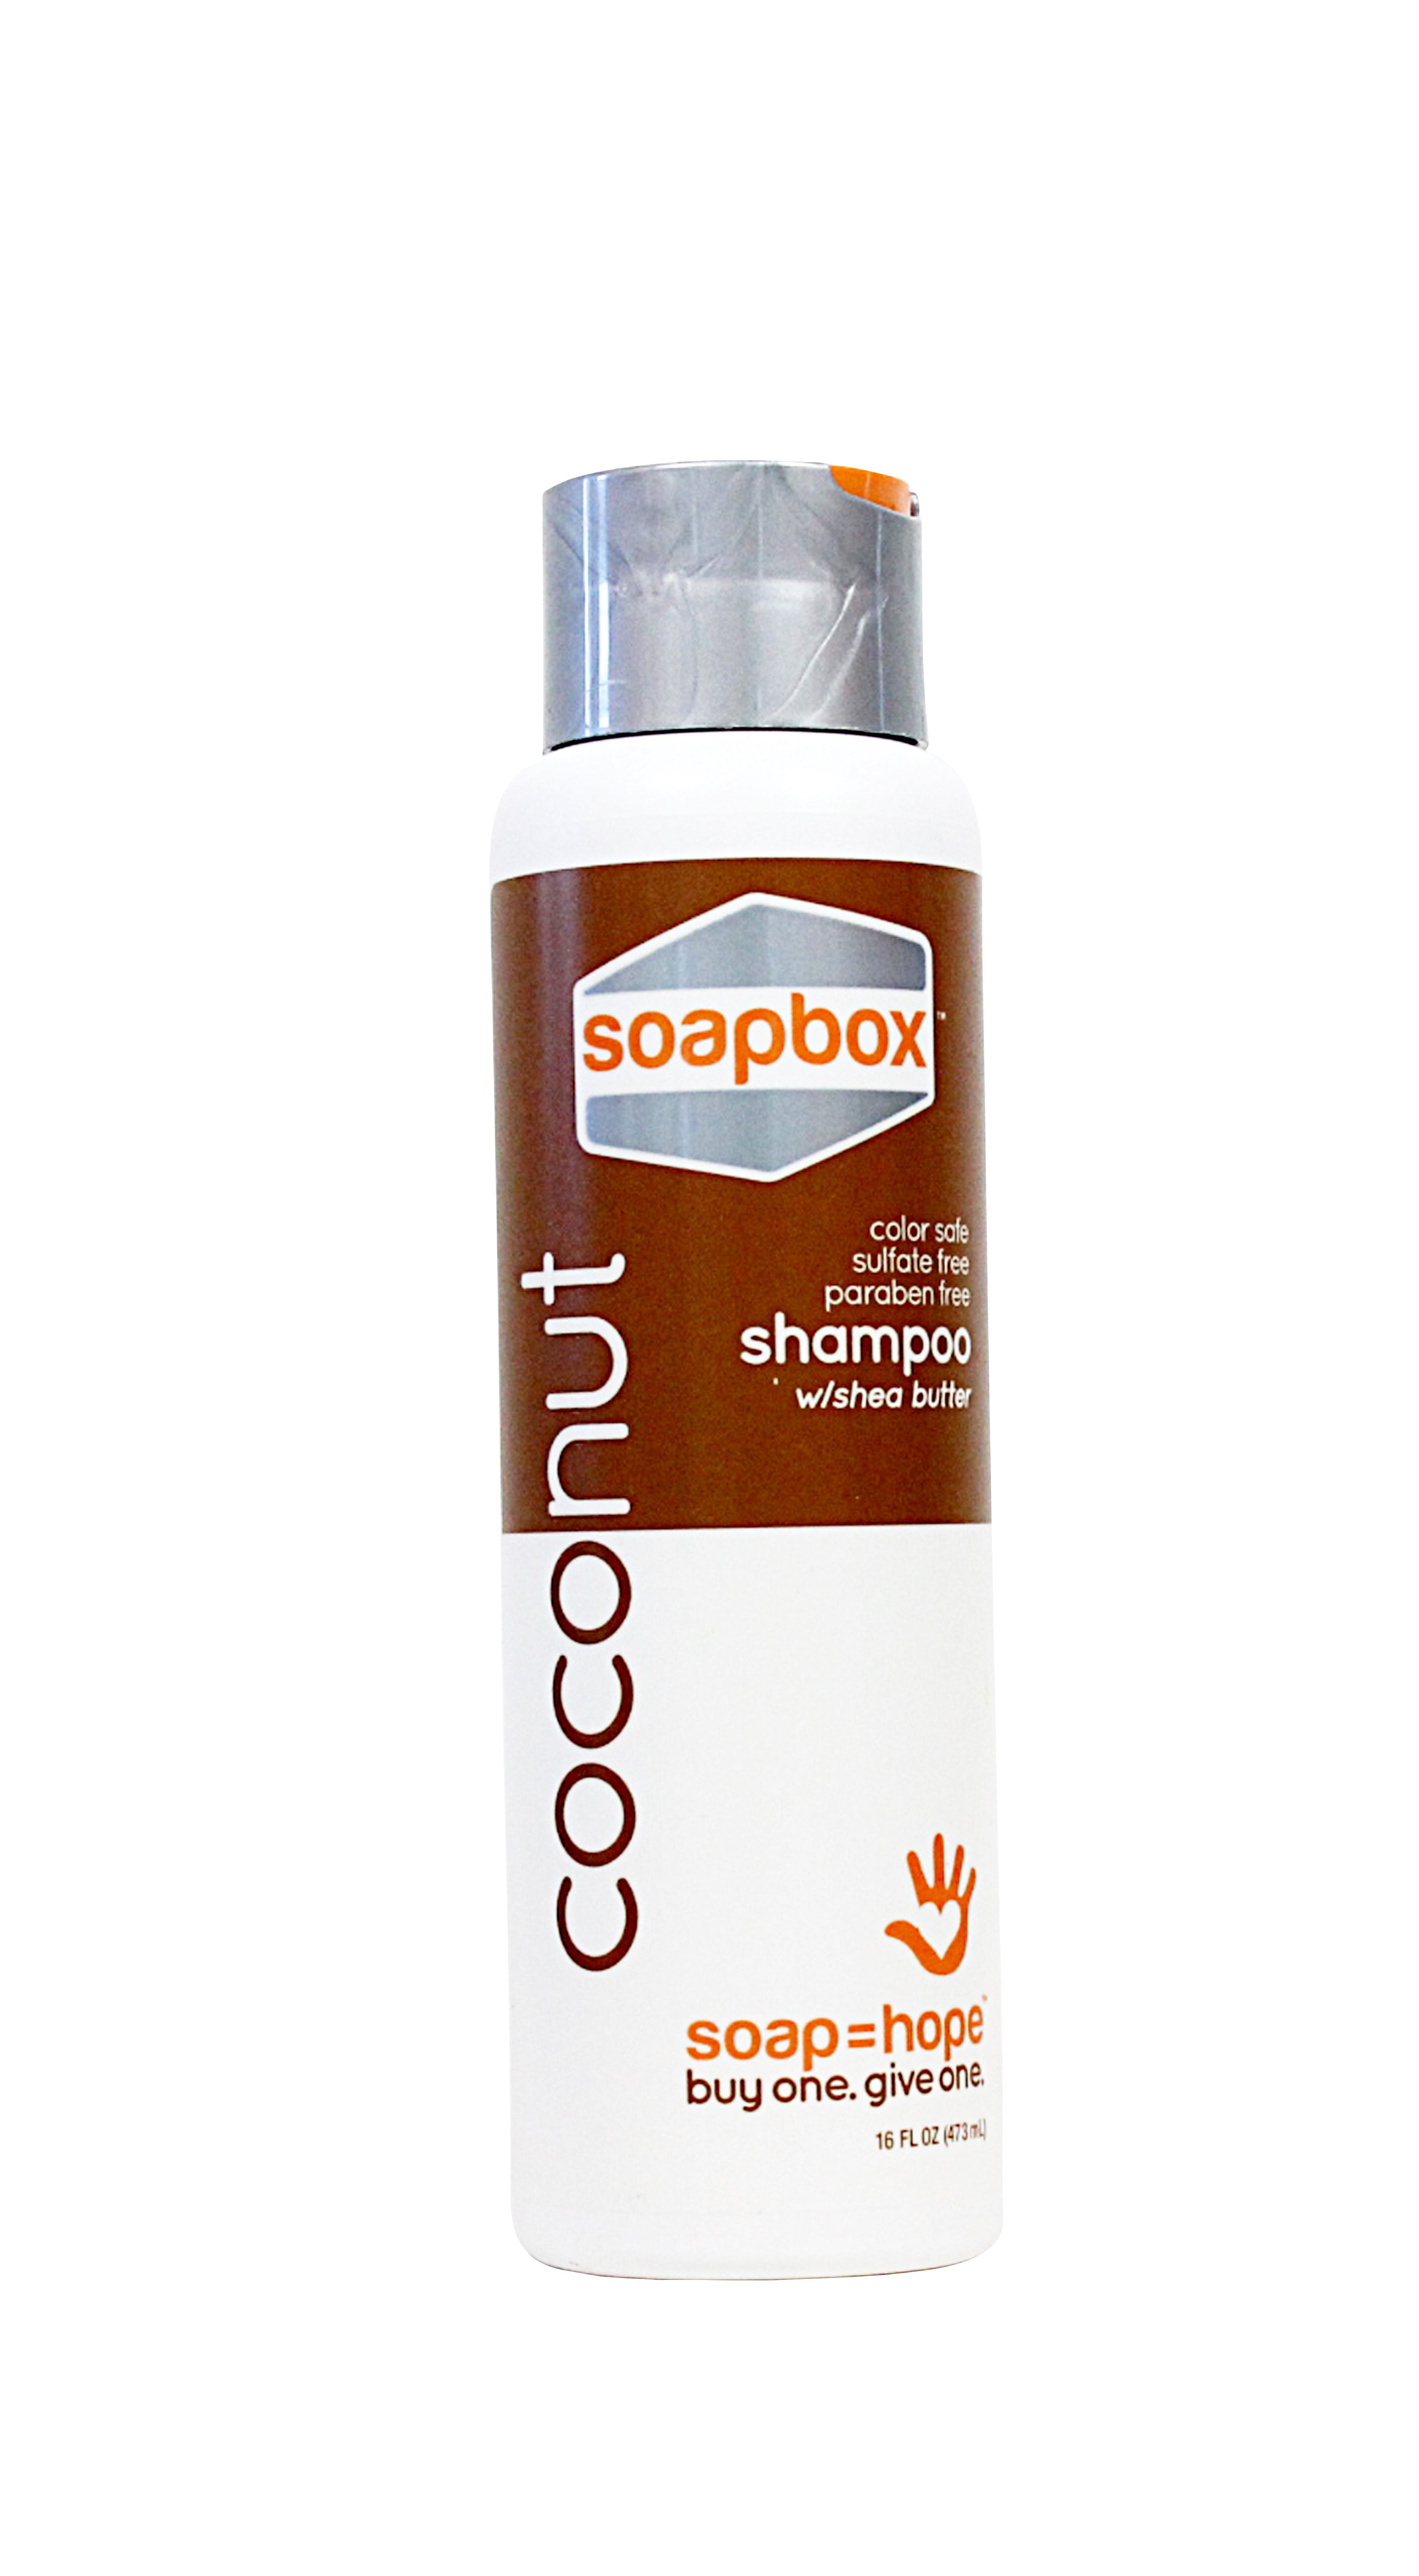 soapbox shampoo